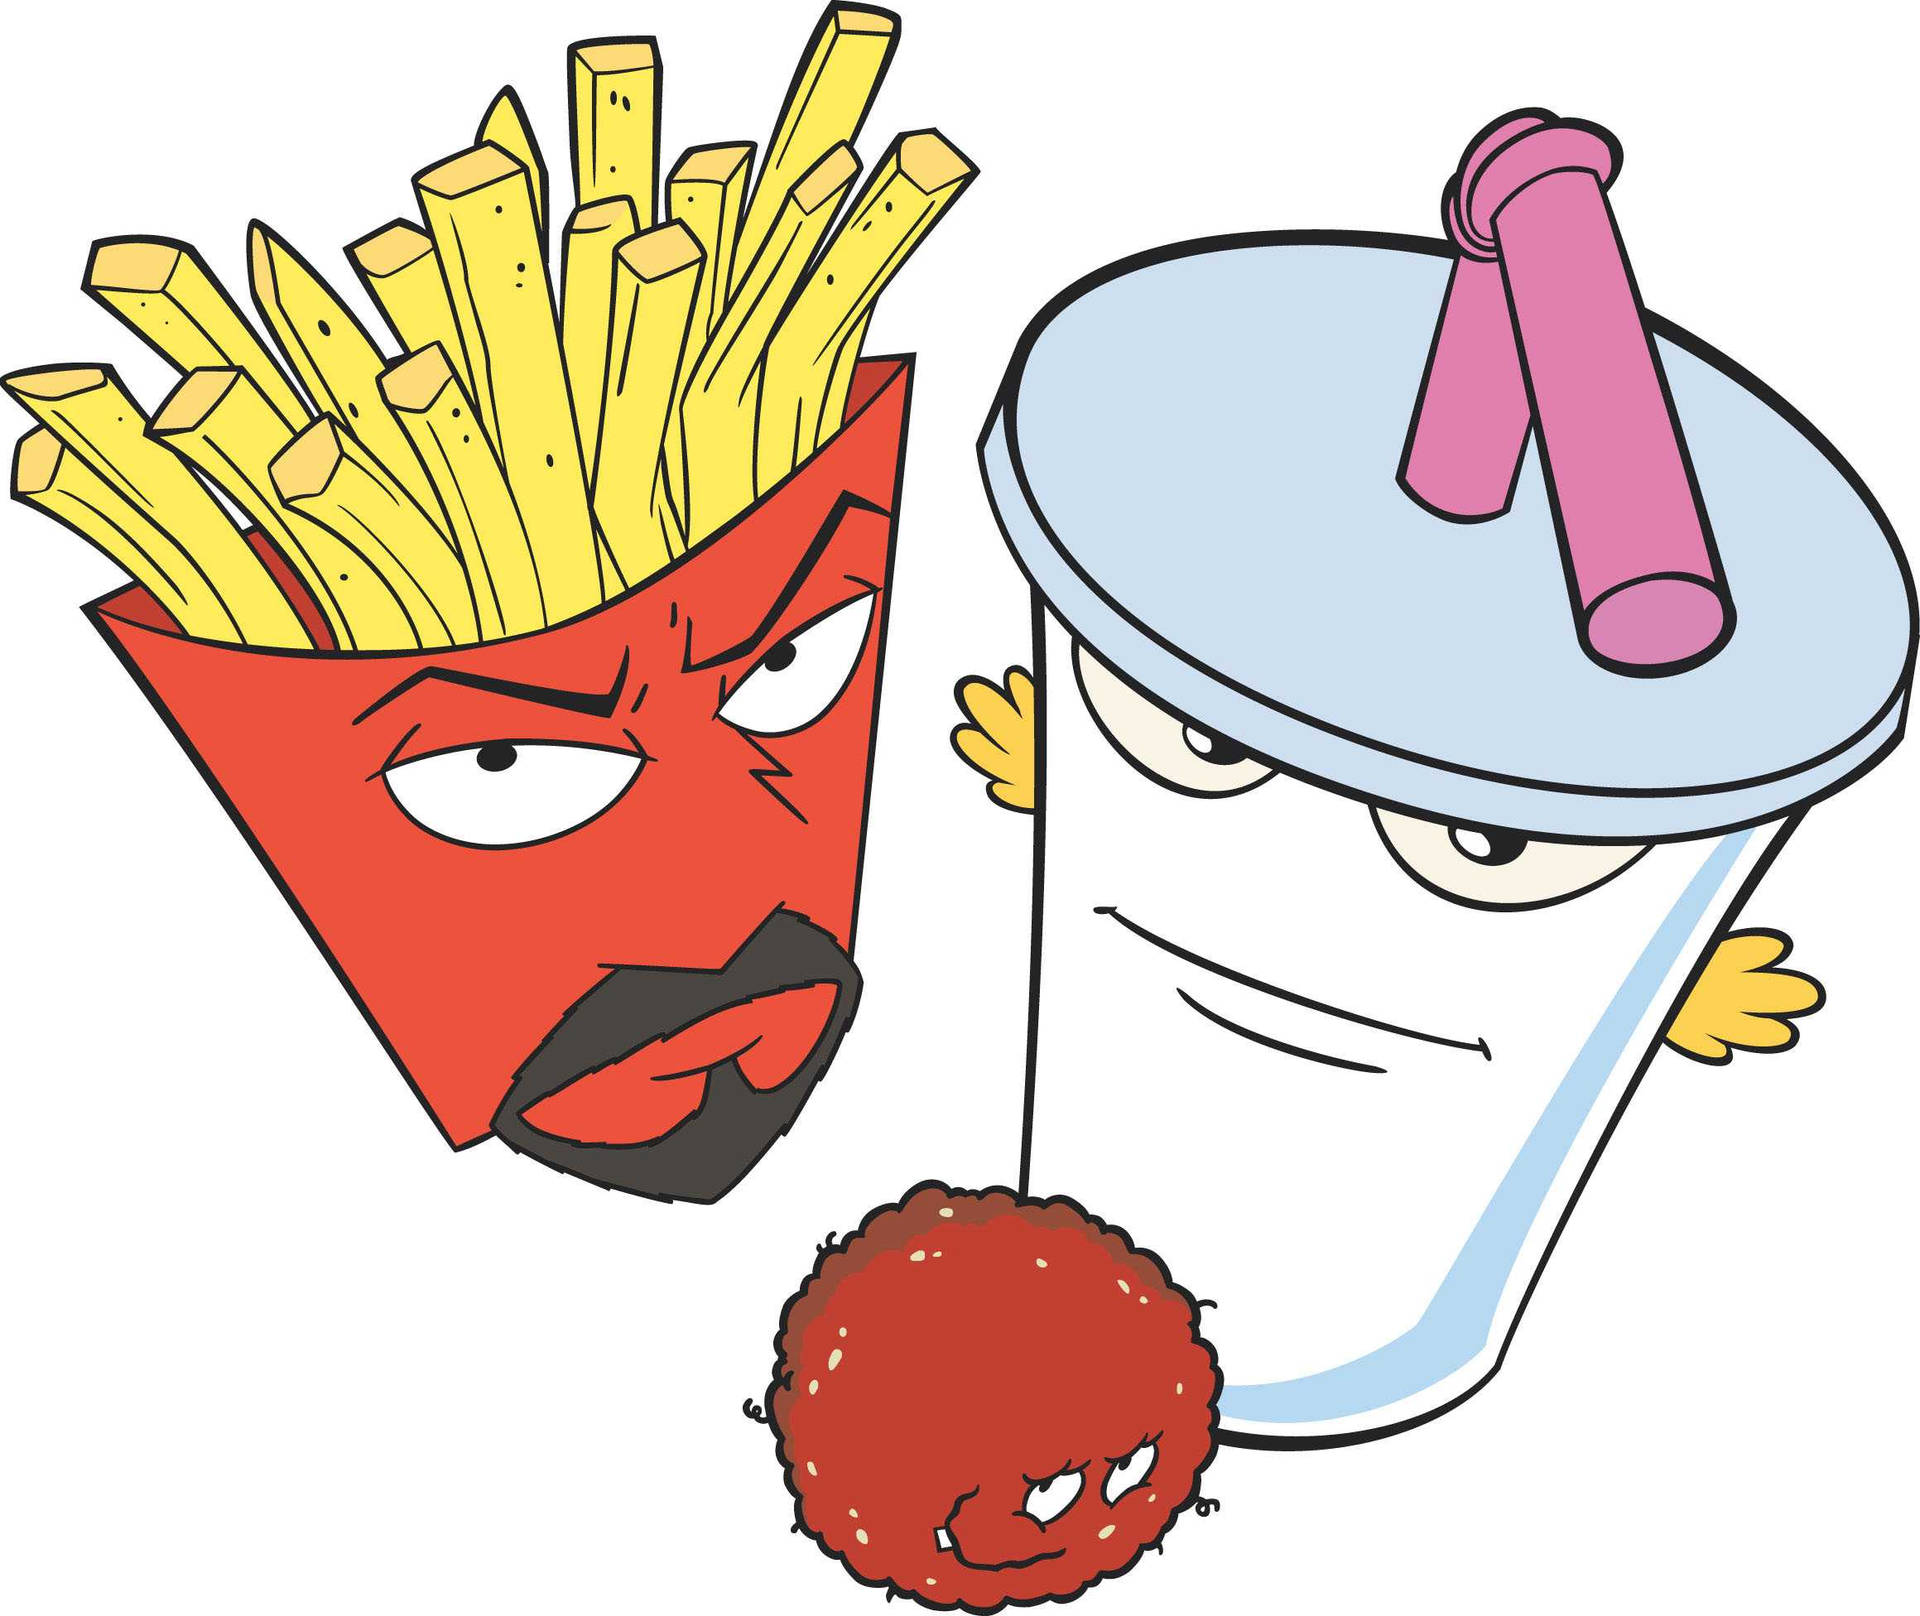 Aqua Teen Hunger Force Fast Food Items